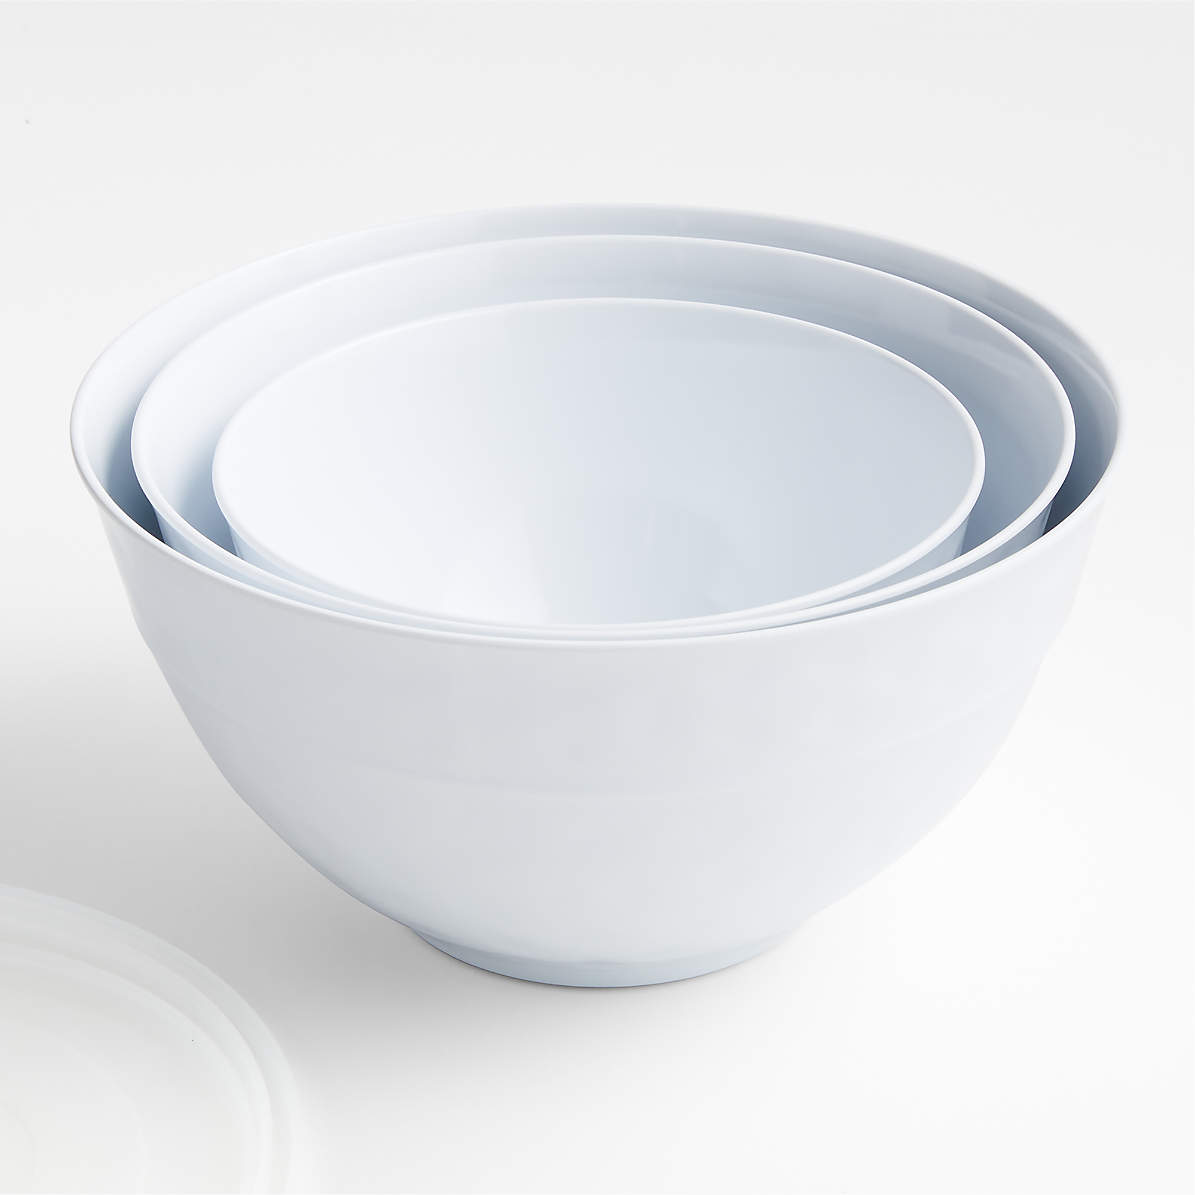 Kitchenaid Set Of 3 Mixing Bowls  Mixing & Prep Bowls - Shop Your